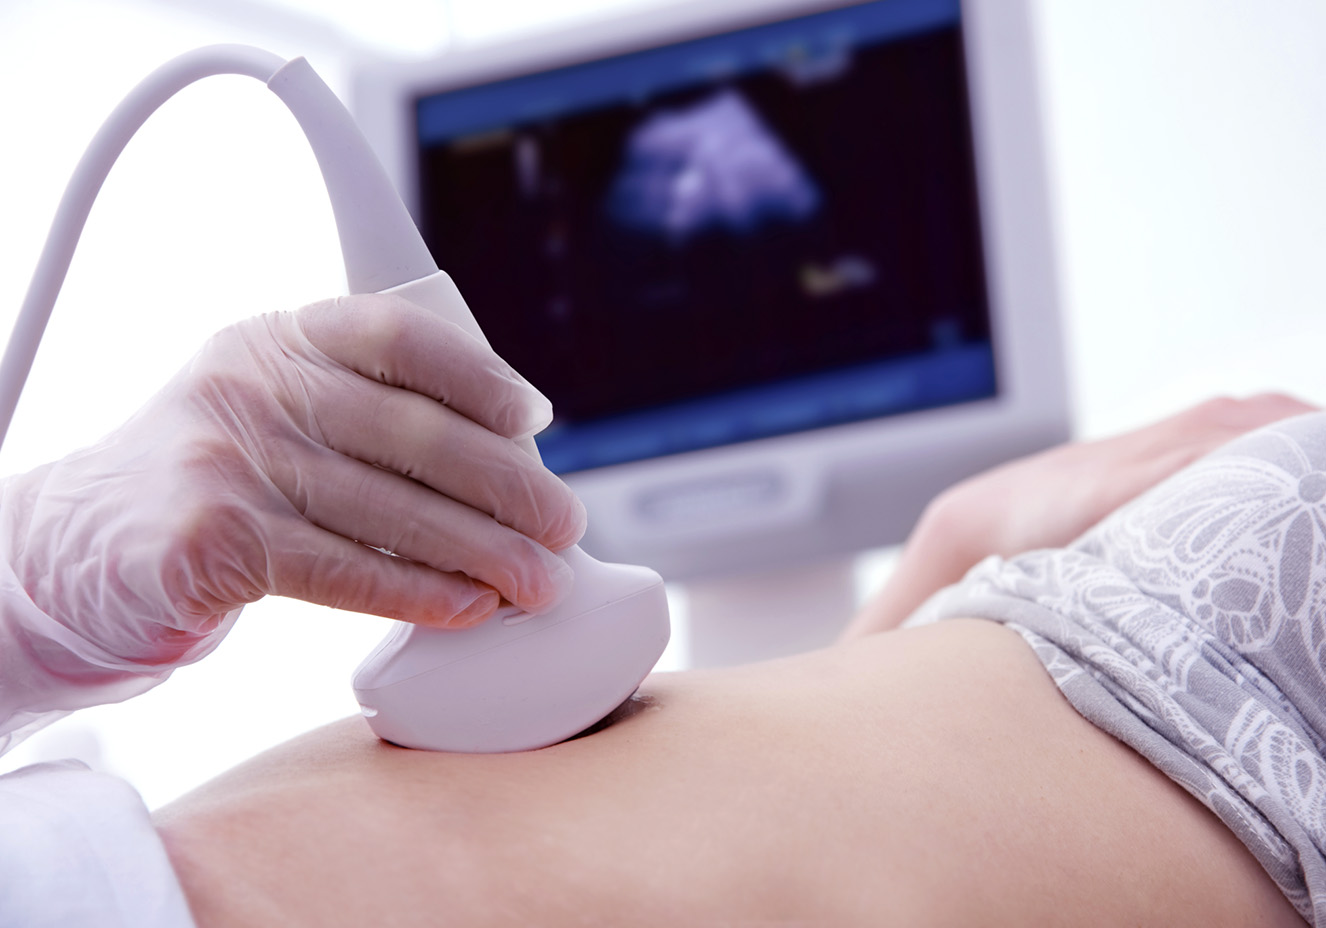 Mulher grávida fazendo exame de ultrassom. A foto está foca na barriga dela. Tem pele clara. O aparelho está sendo segurado por uma mão com luva. Ao fundo, é possível ver o monitor.